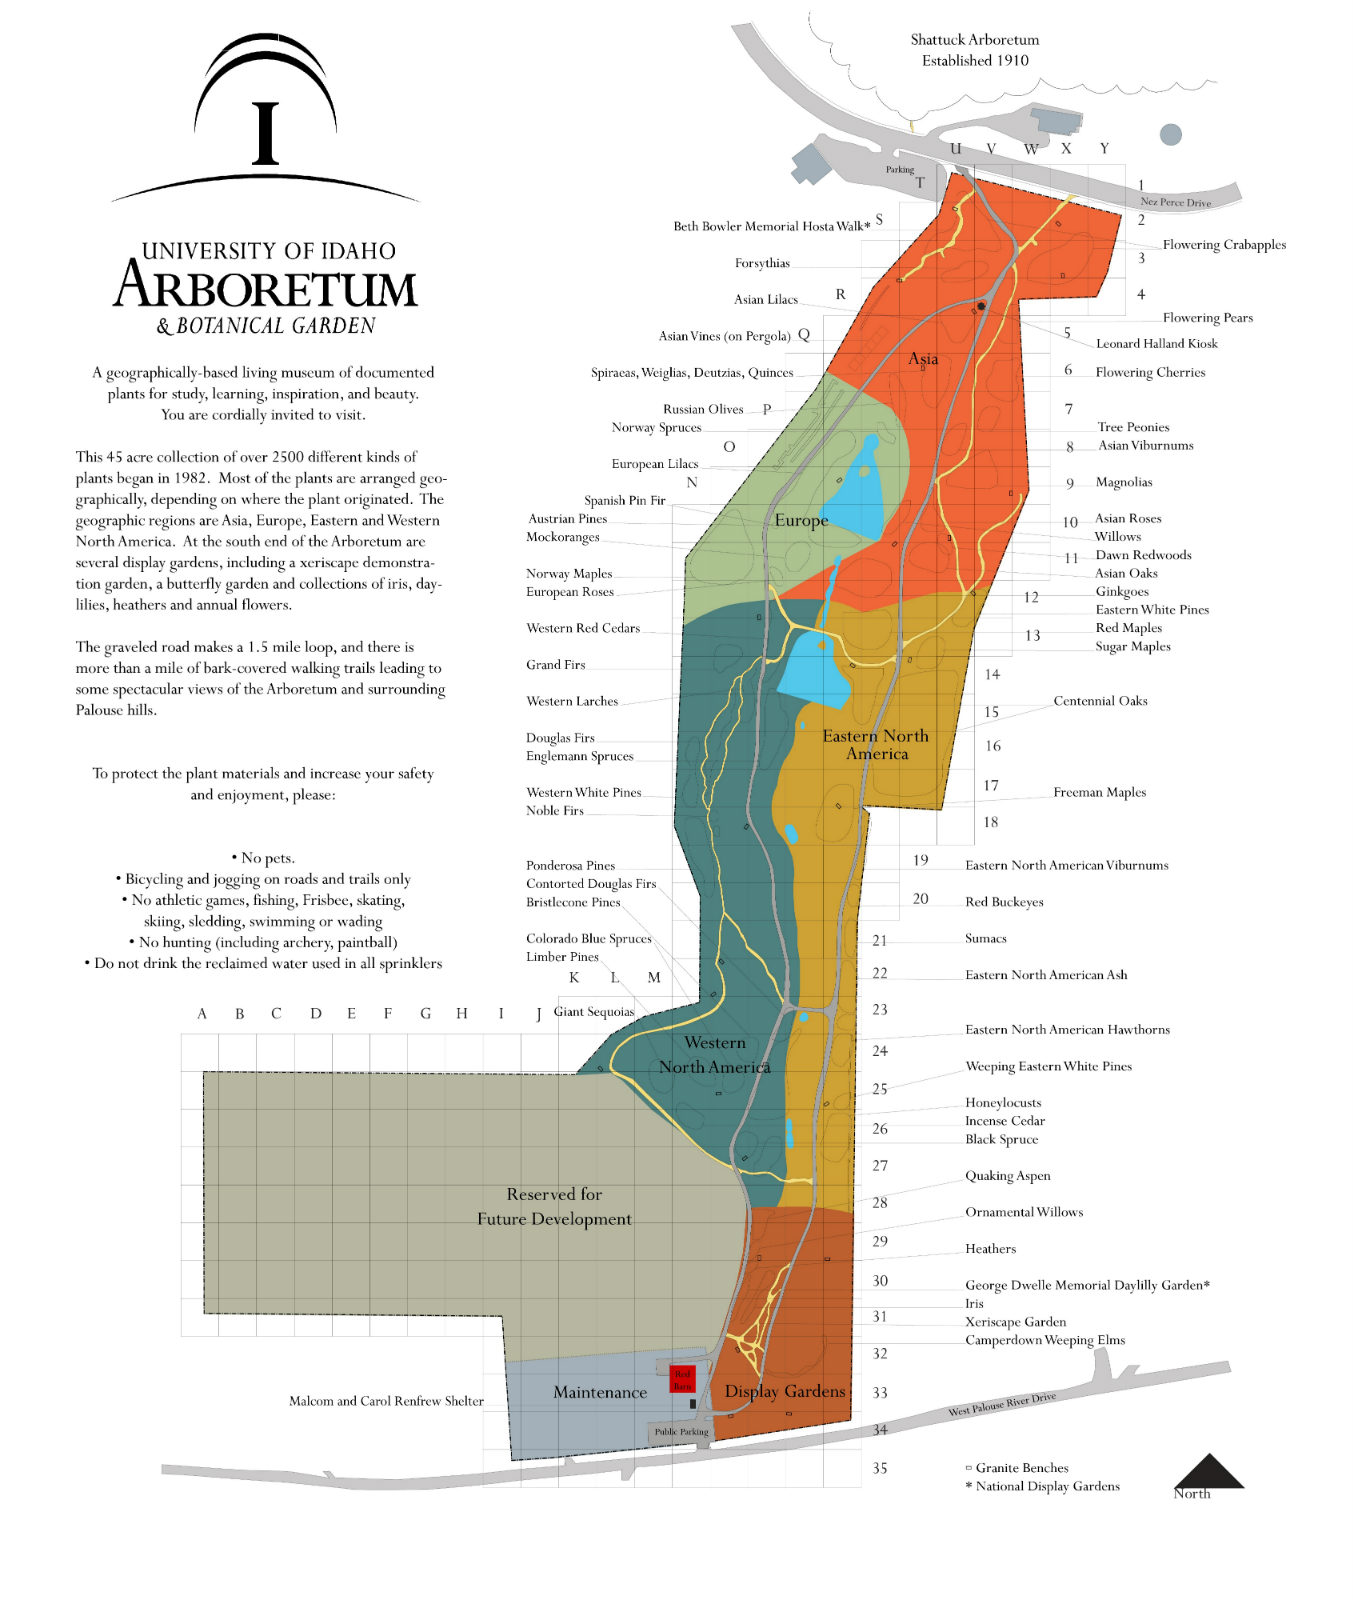 Map of the University of Idaho Arboretum & Botanical Garden